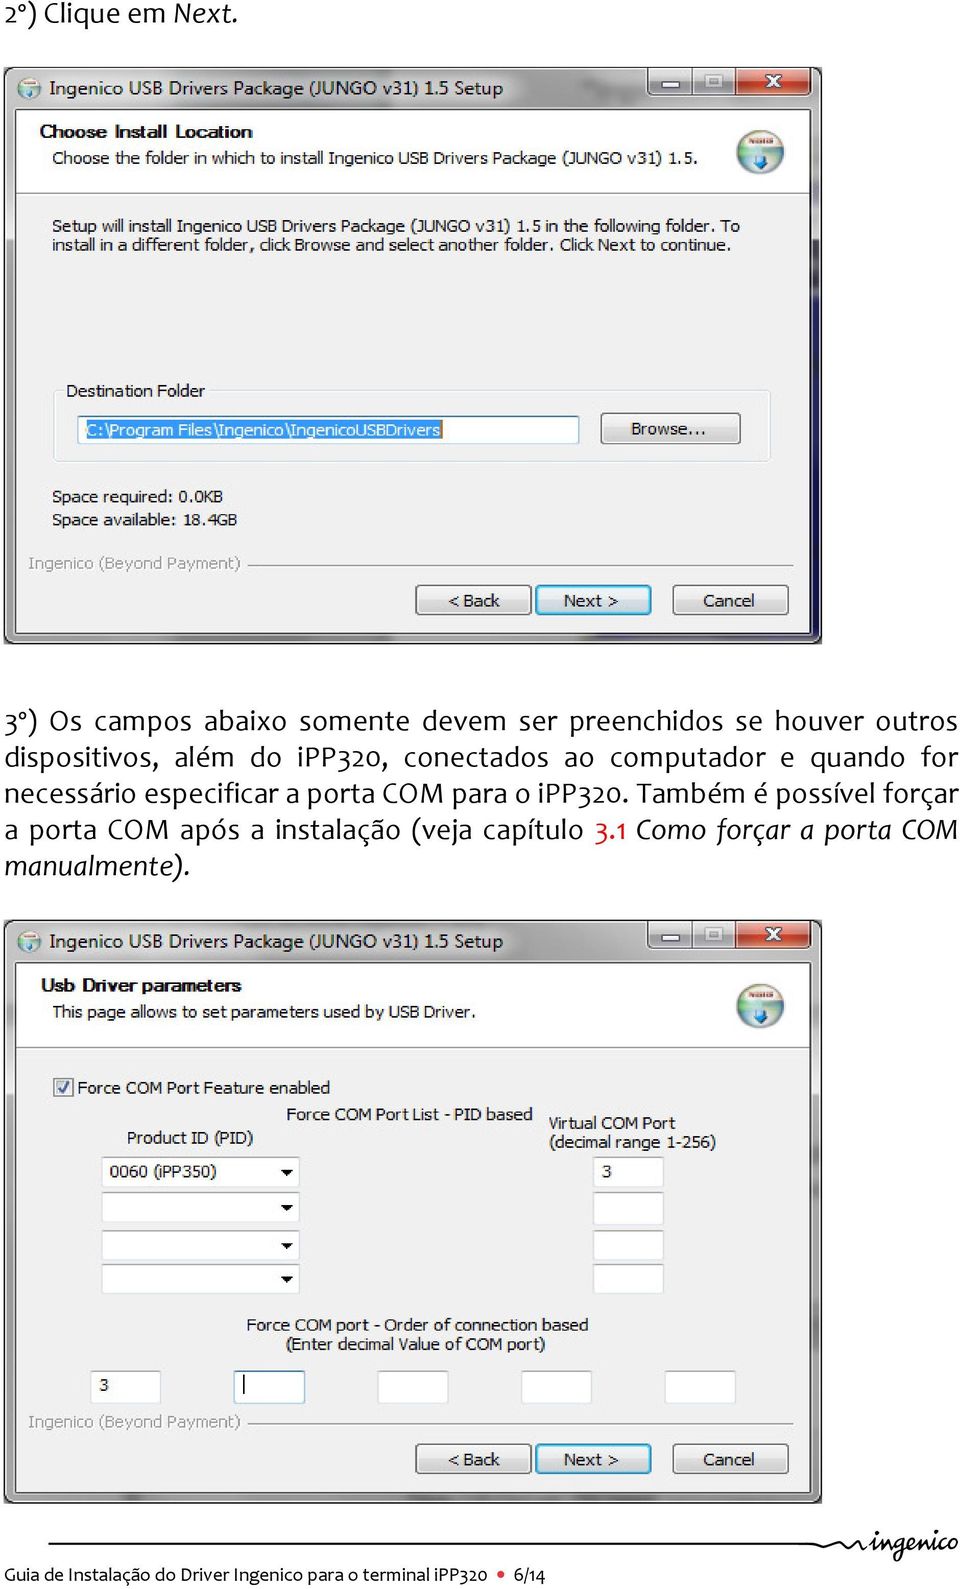 ipp320, conectados ao computador e quando for necessário especificar a porta COM para o ipp320.